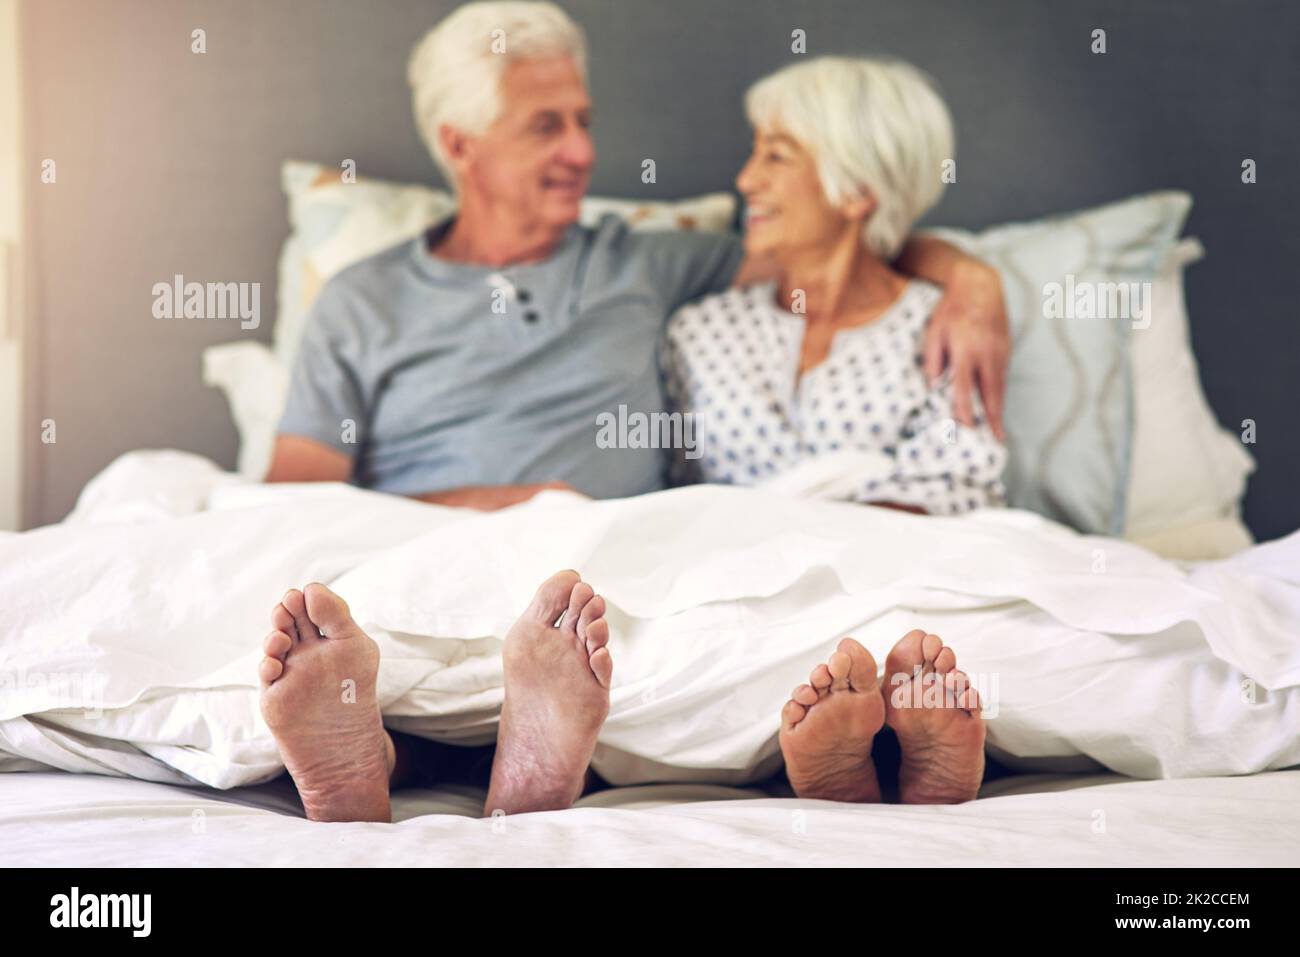 Se réveiller à côté de vous est inestimable. Photo d'un couple senior allongé dans le lit. Banque D'Images